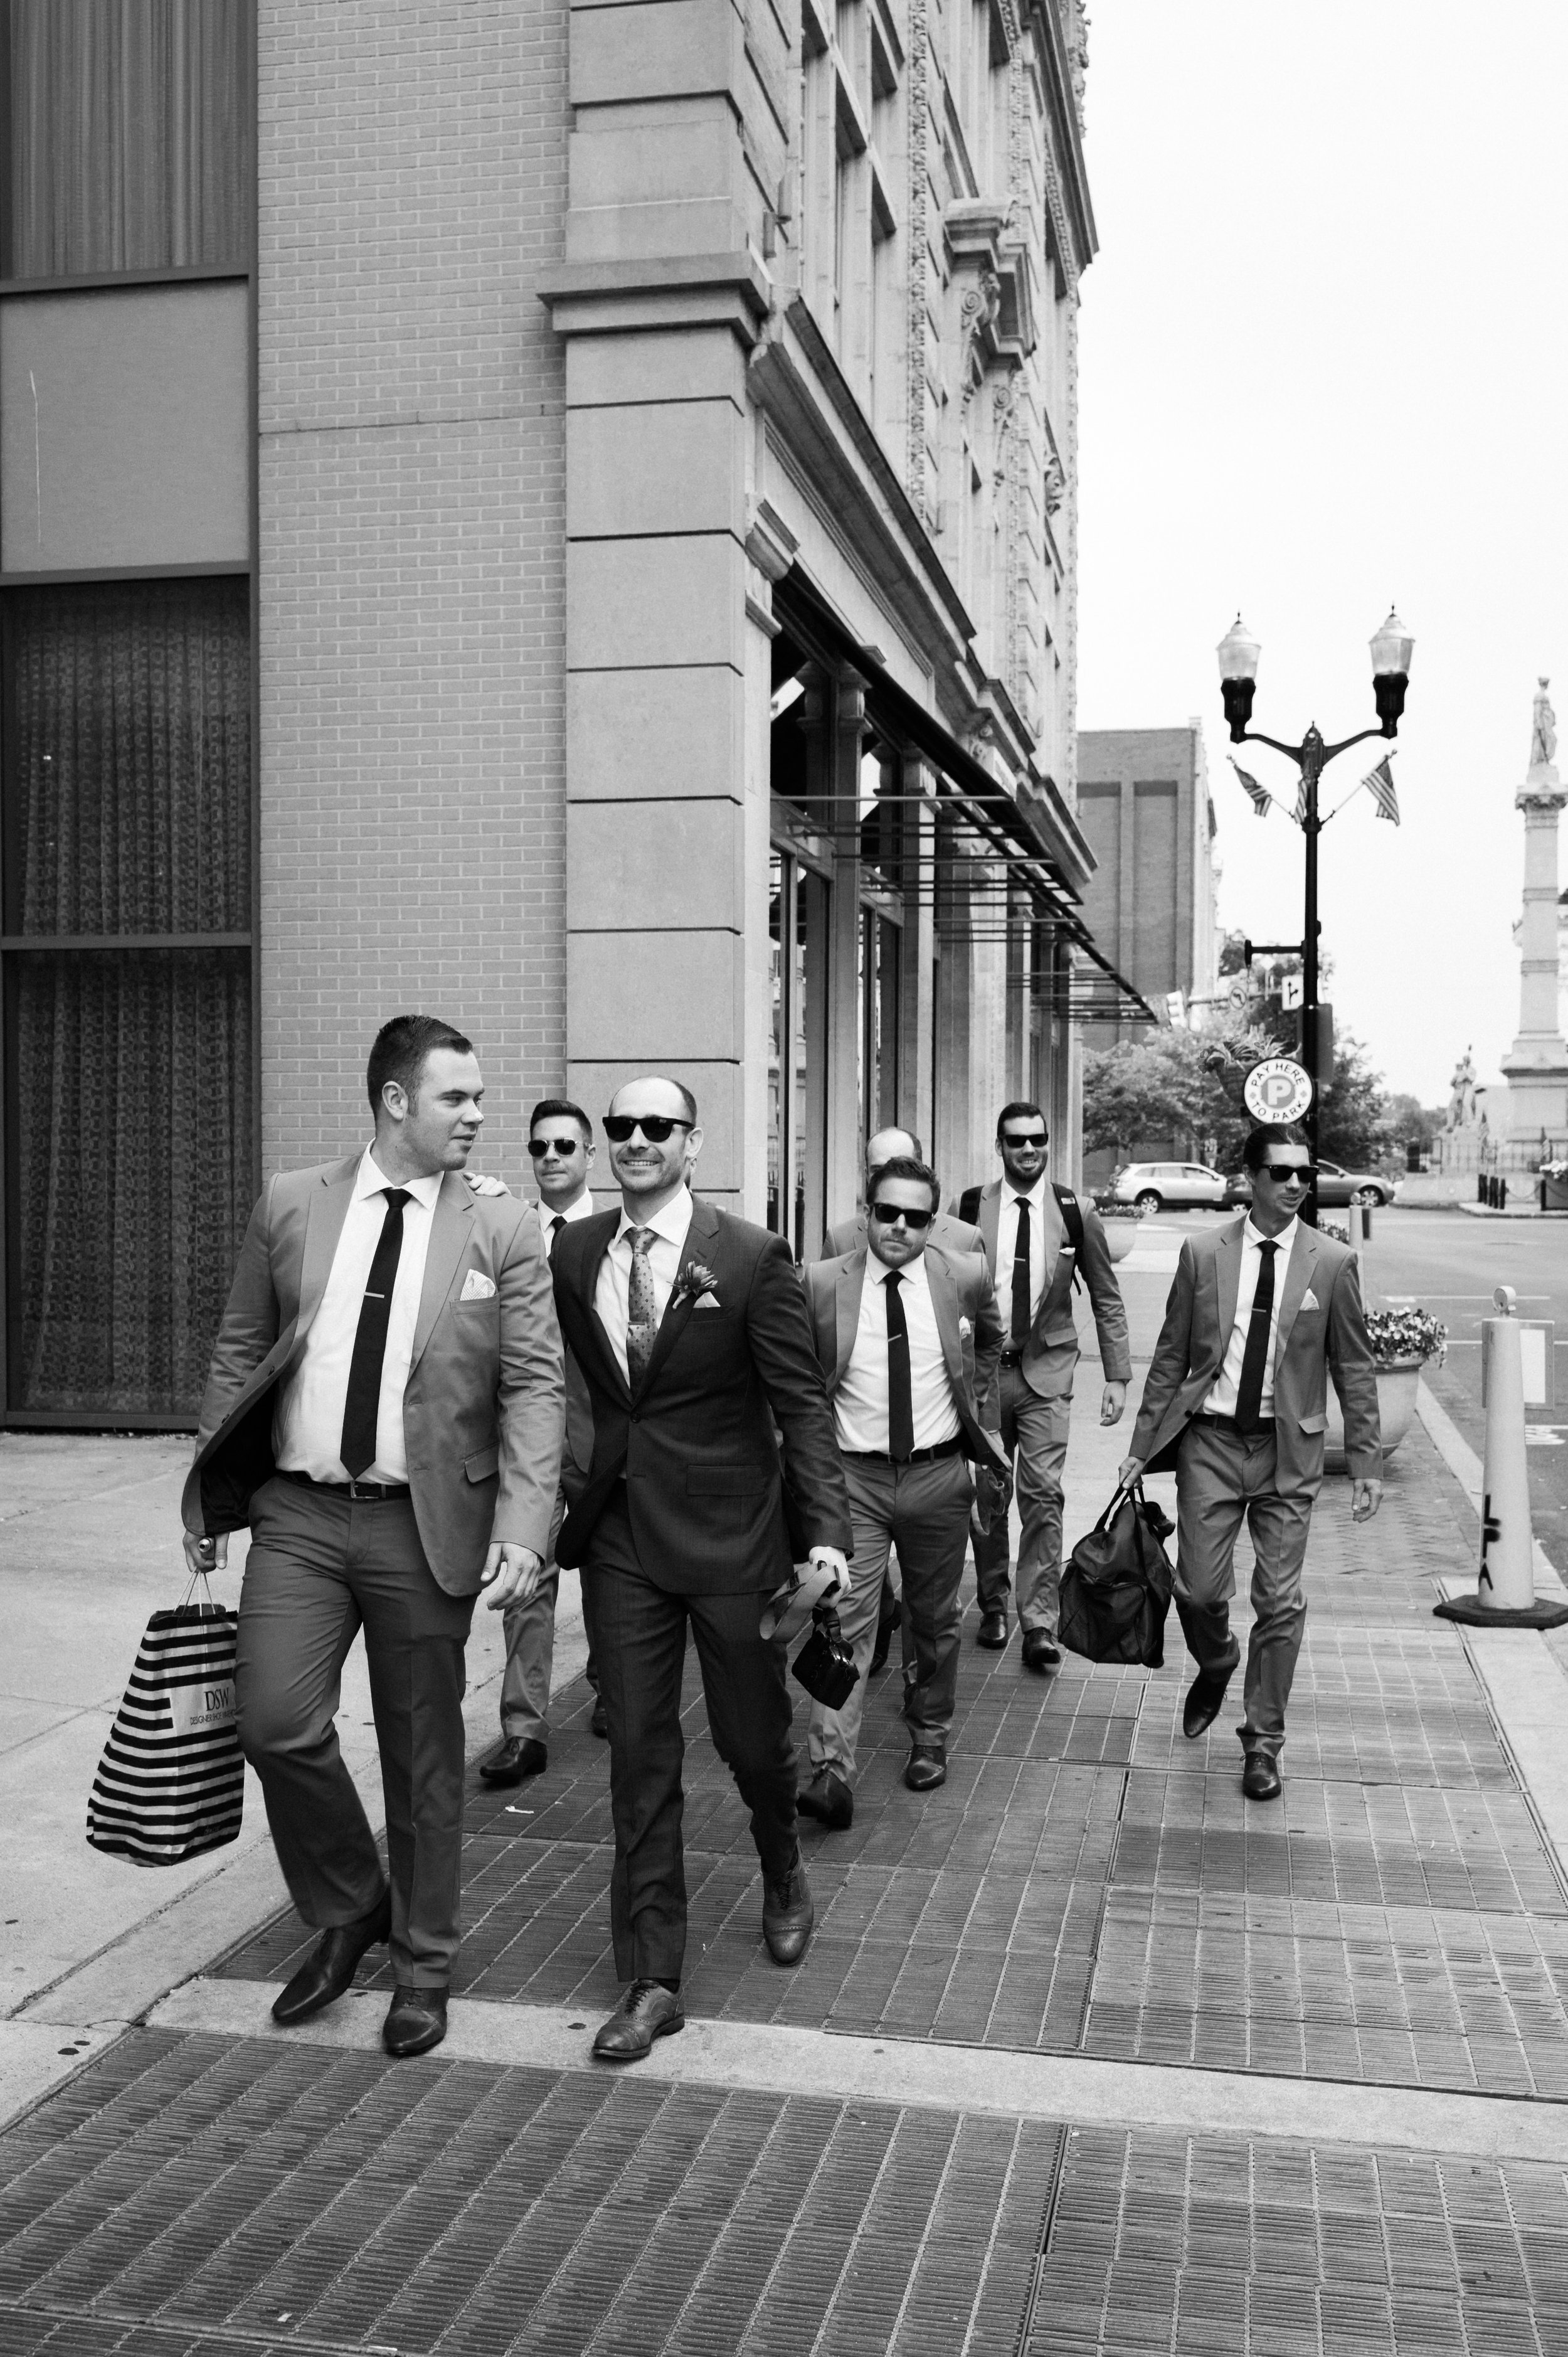 Groom and groomsmen walking down sidewalk